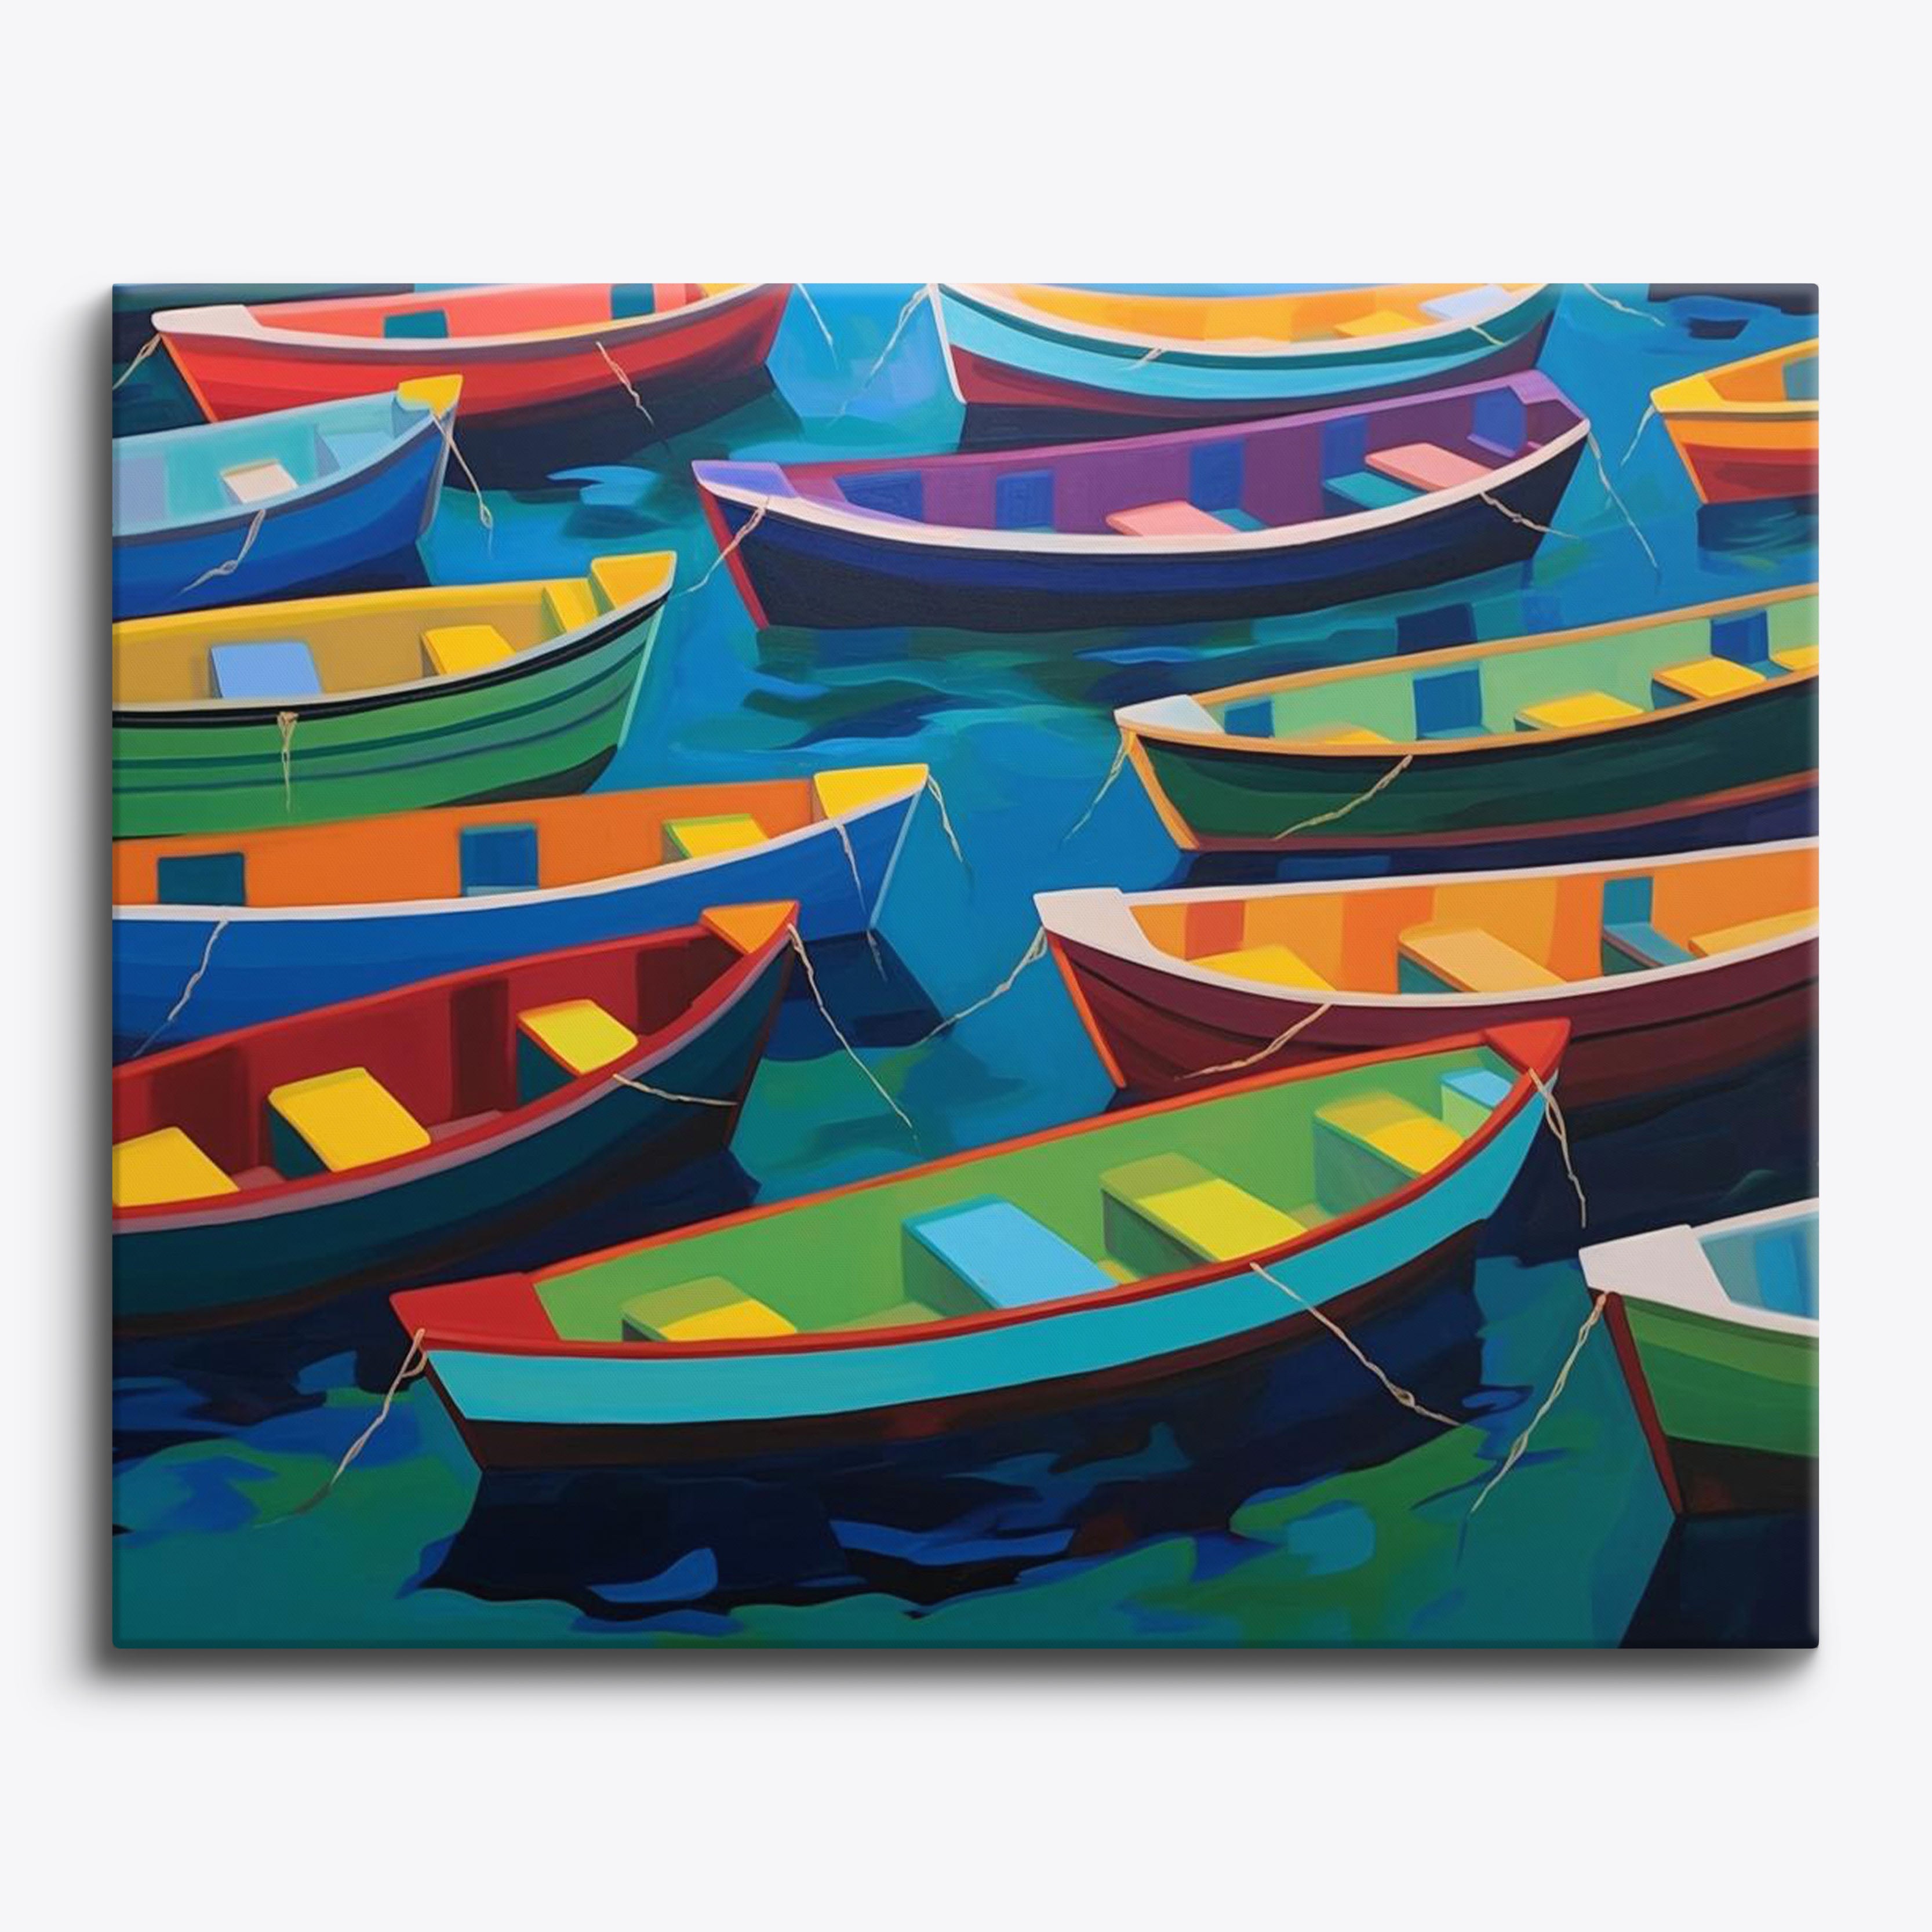 Ocean Boats No Frame / 24 colors